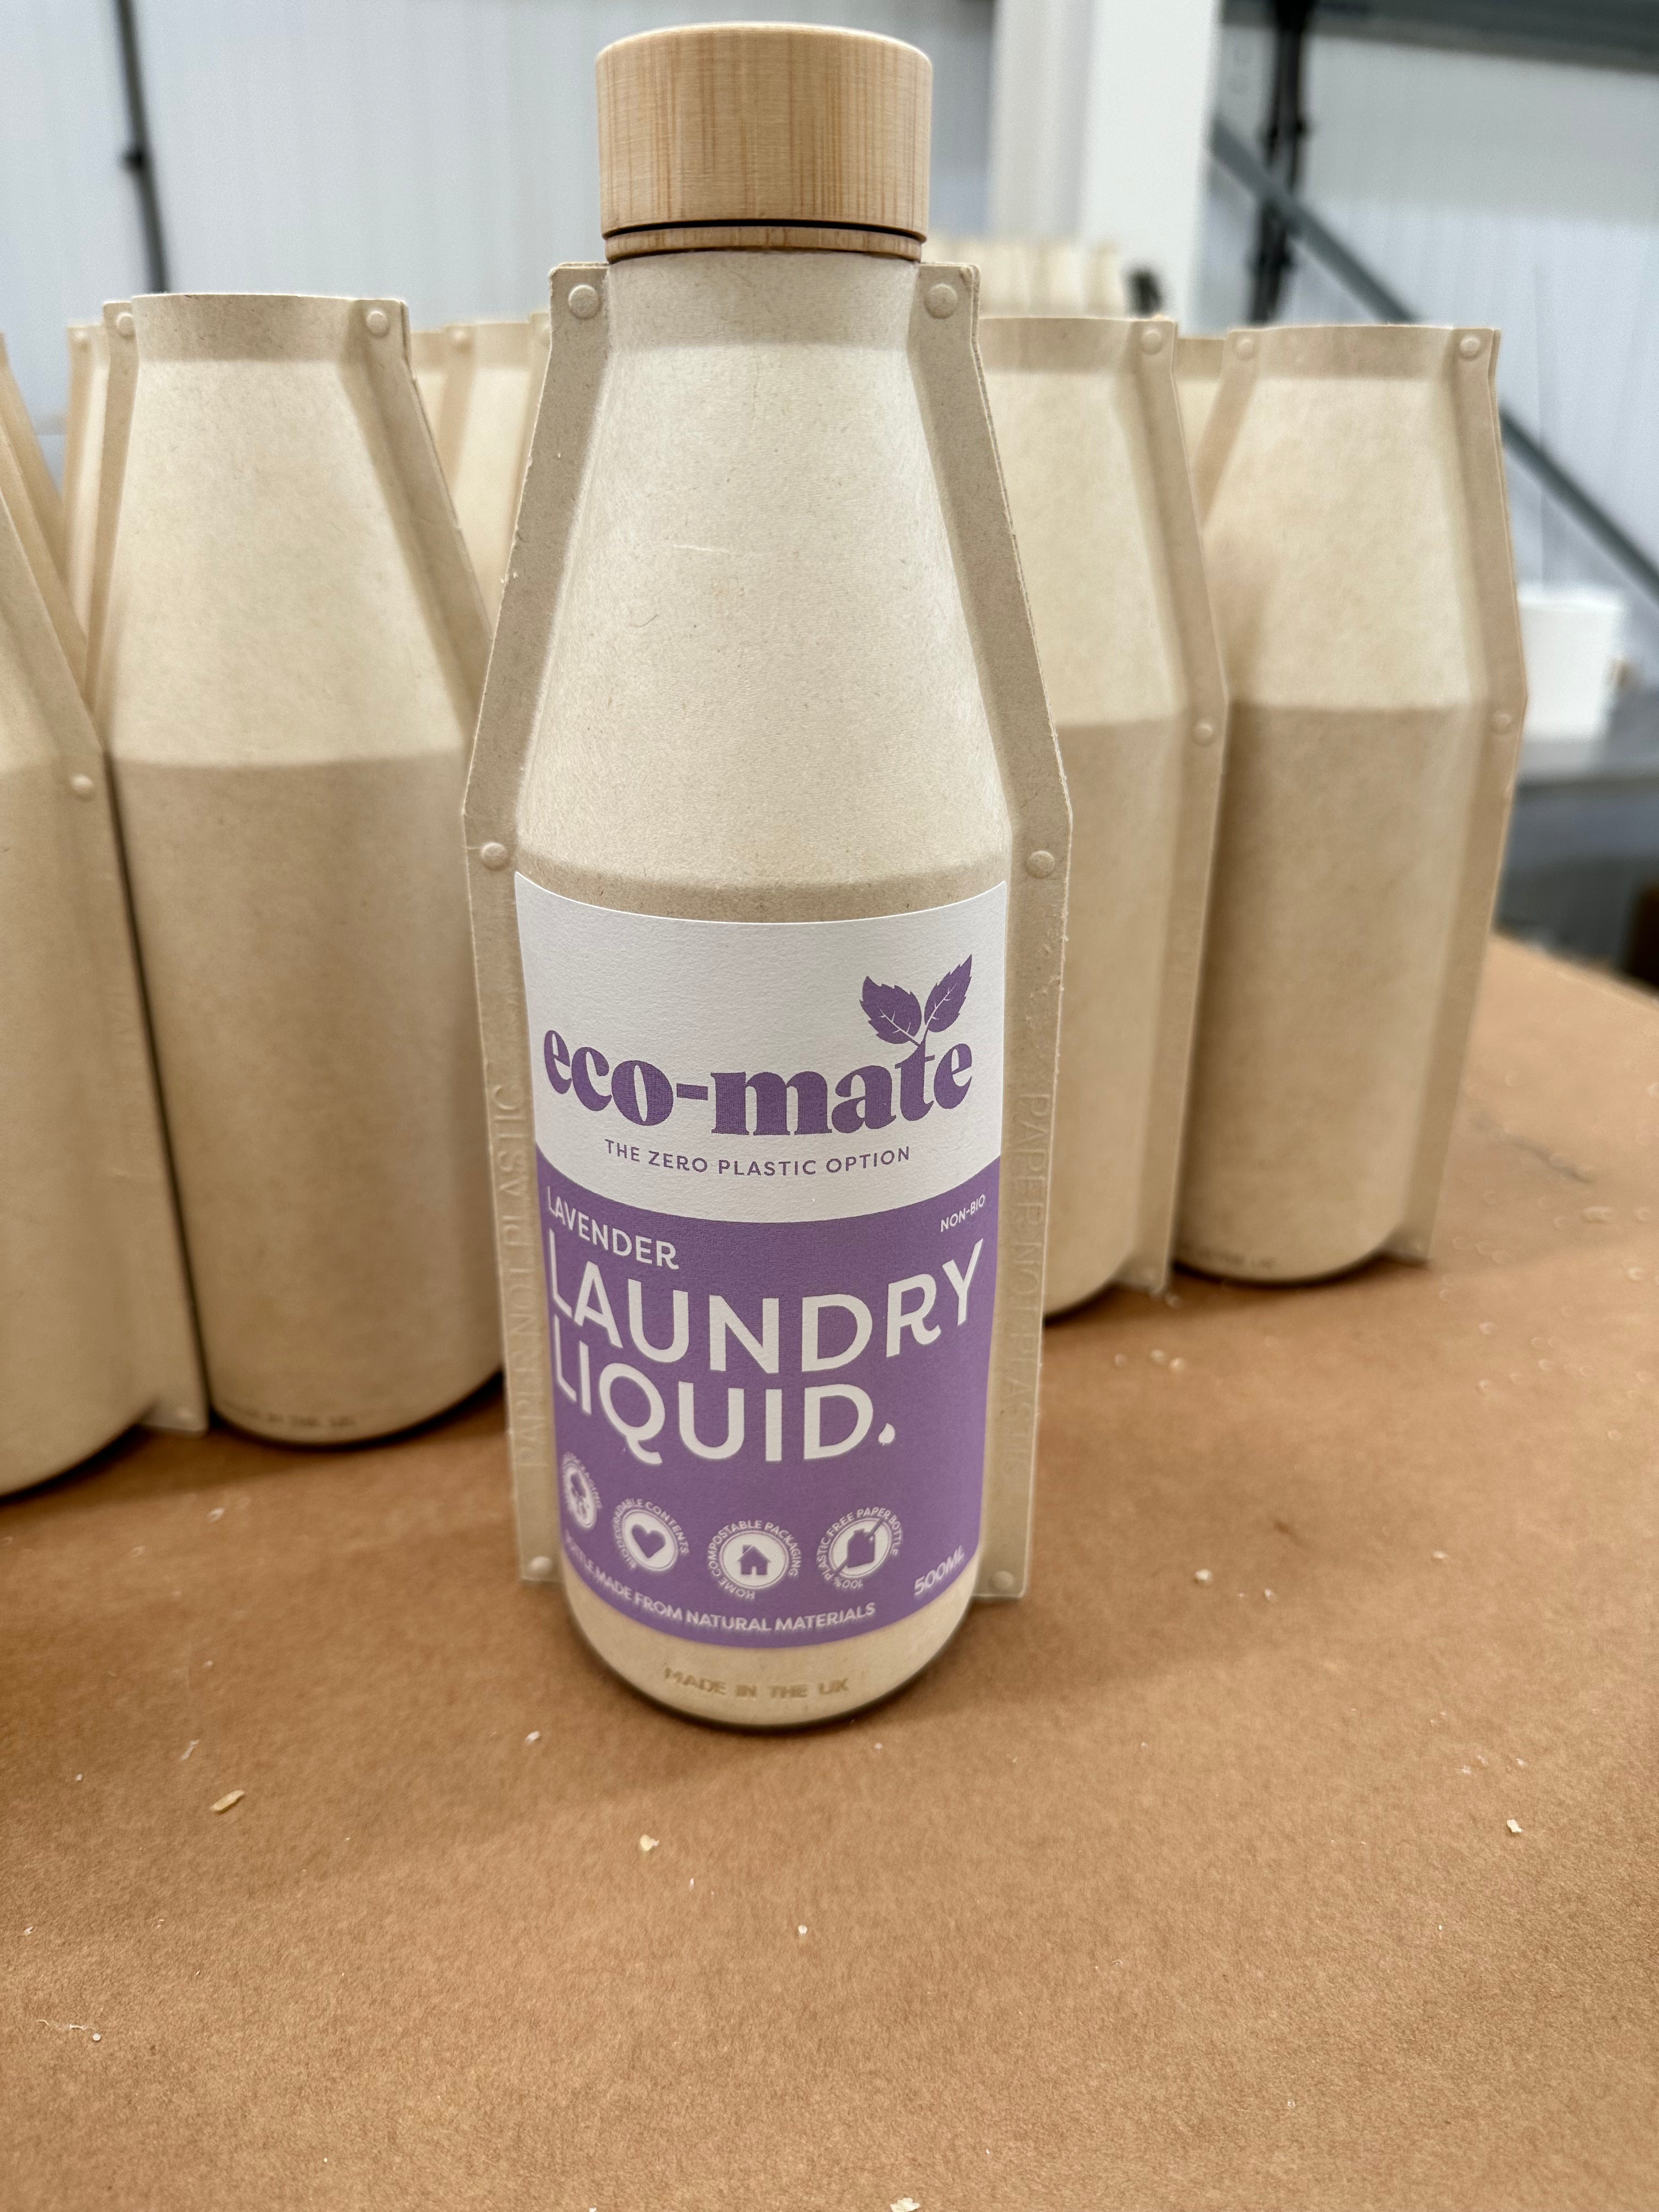 Lavender Concentrated Non-Bio Laundry Liquid